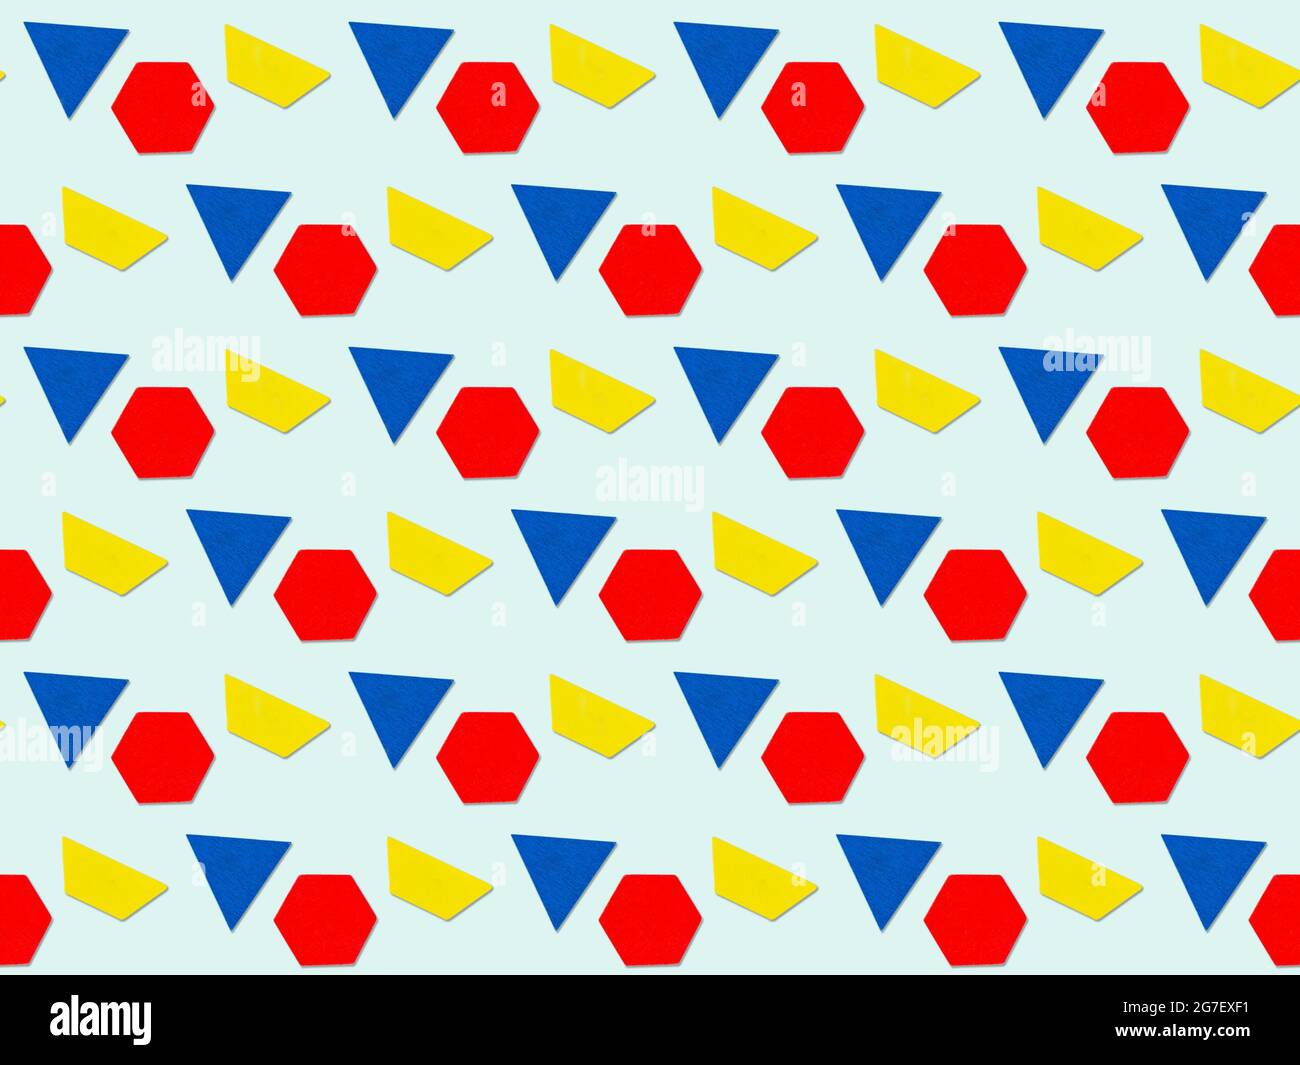 Abstrakter Hintergrund mit geometrischen mehrfarbigen Dreiecks-, Trapez-, Sechseck-Figuren. Farbenfroher geometrischer Hintergrund. Stockfoto